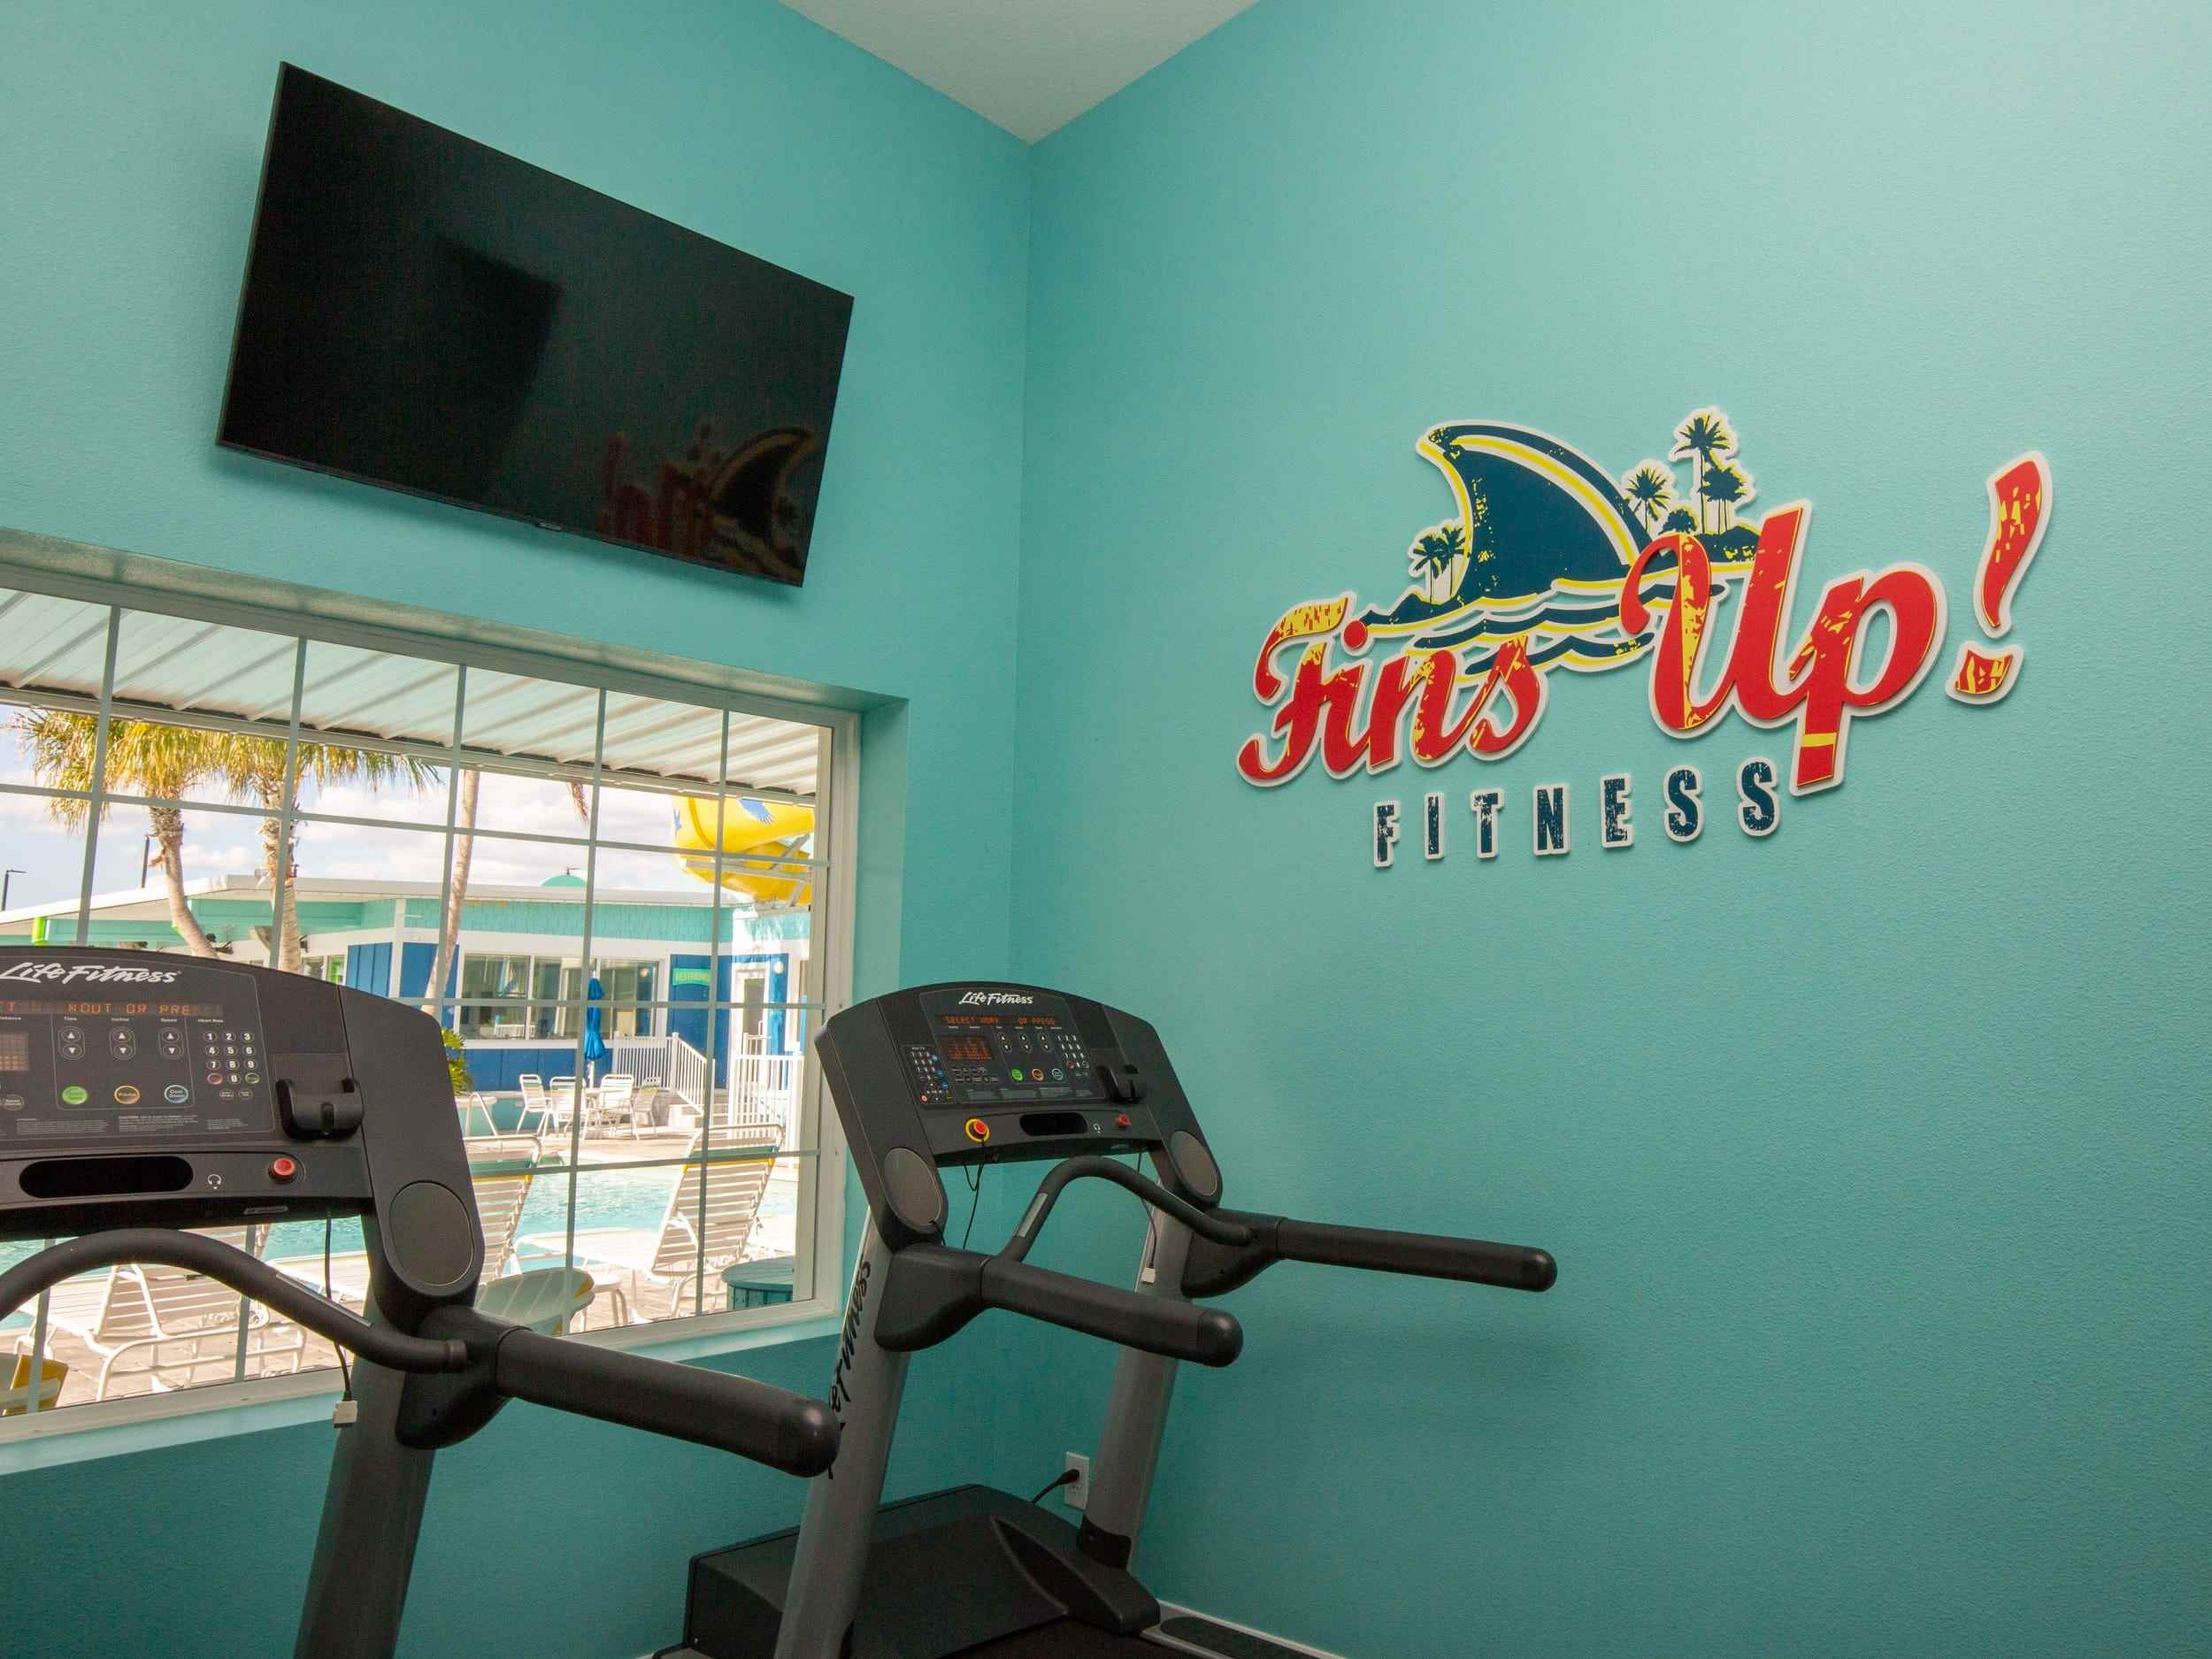 Ein Fitnessbereich mit Laufband, Fernseher, einem Schild mit der Aufschrift „Fins up Fitness“